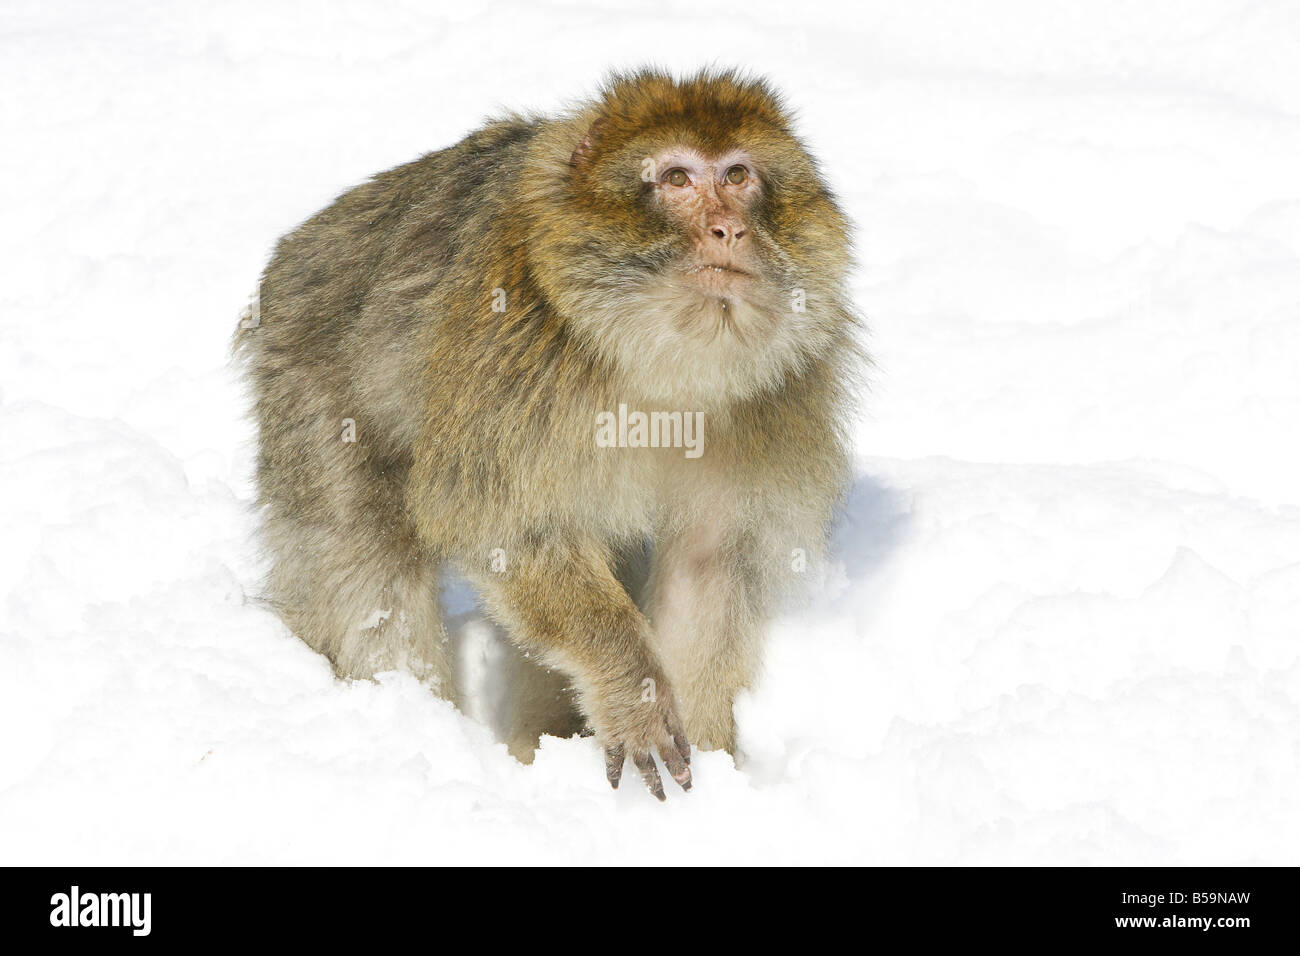 Macaque de barbarie, Barbary Ape (Macaca sylvanus) sur la neige Banque D'Images